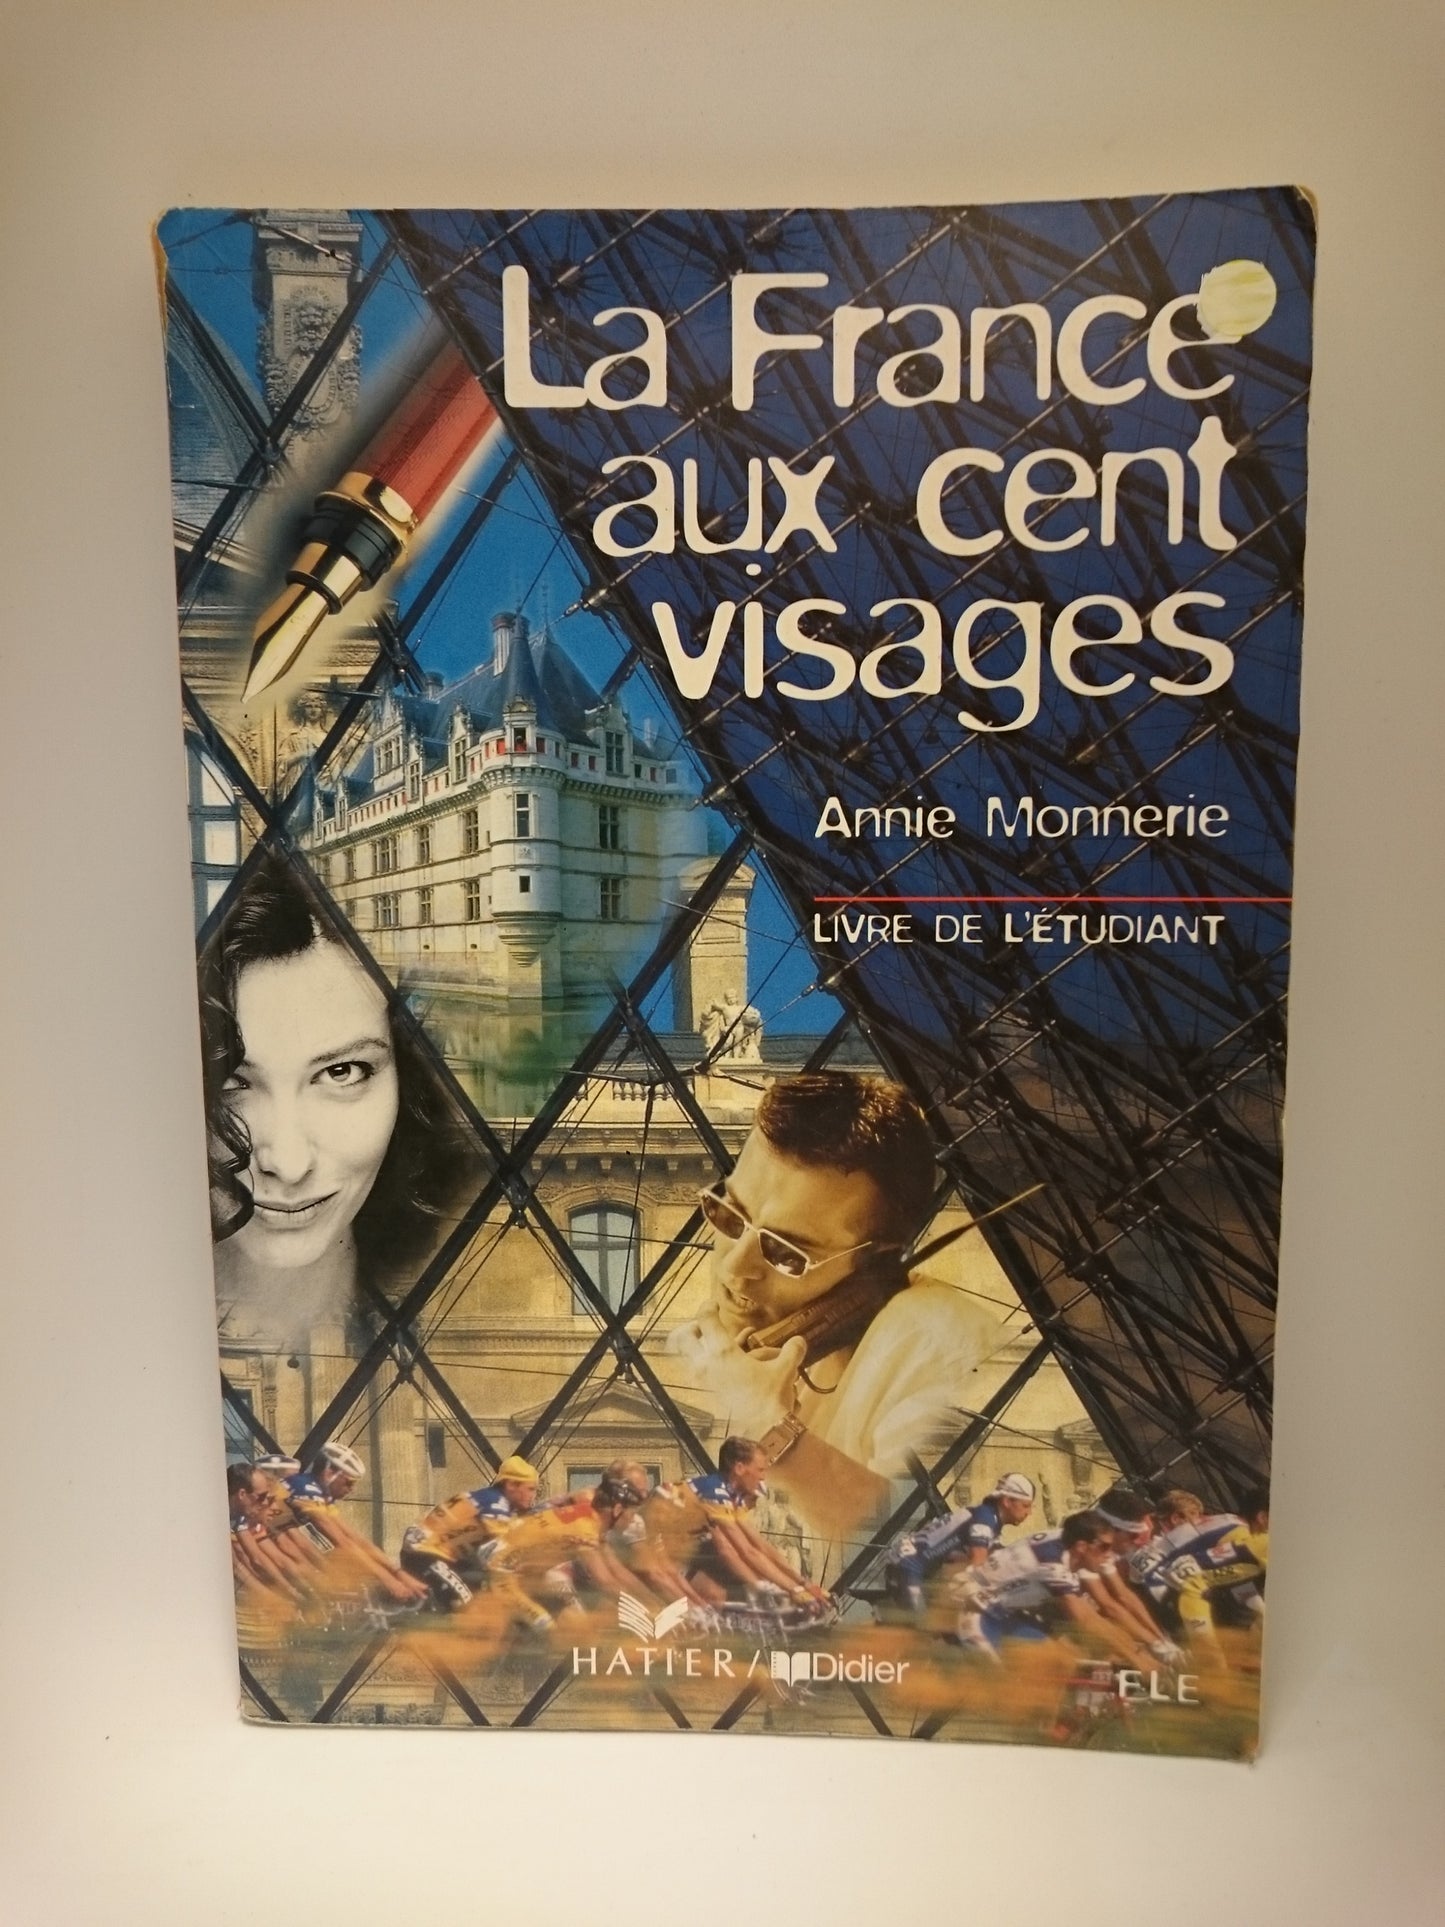 La France aux cent visages (French Edition)